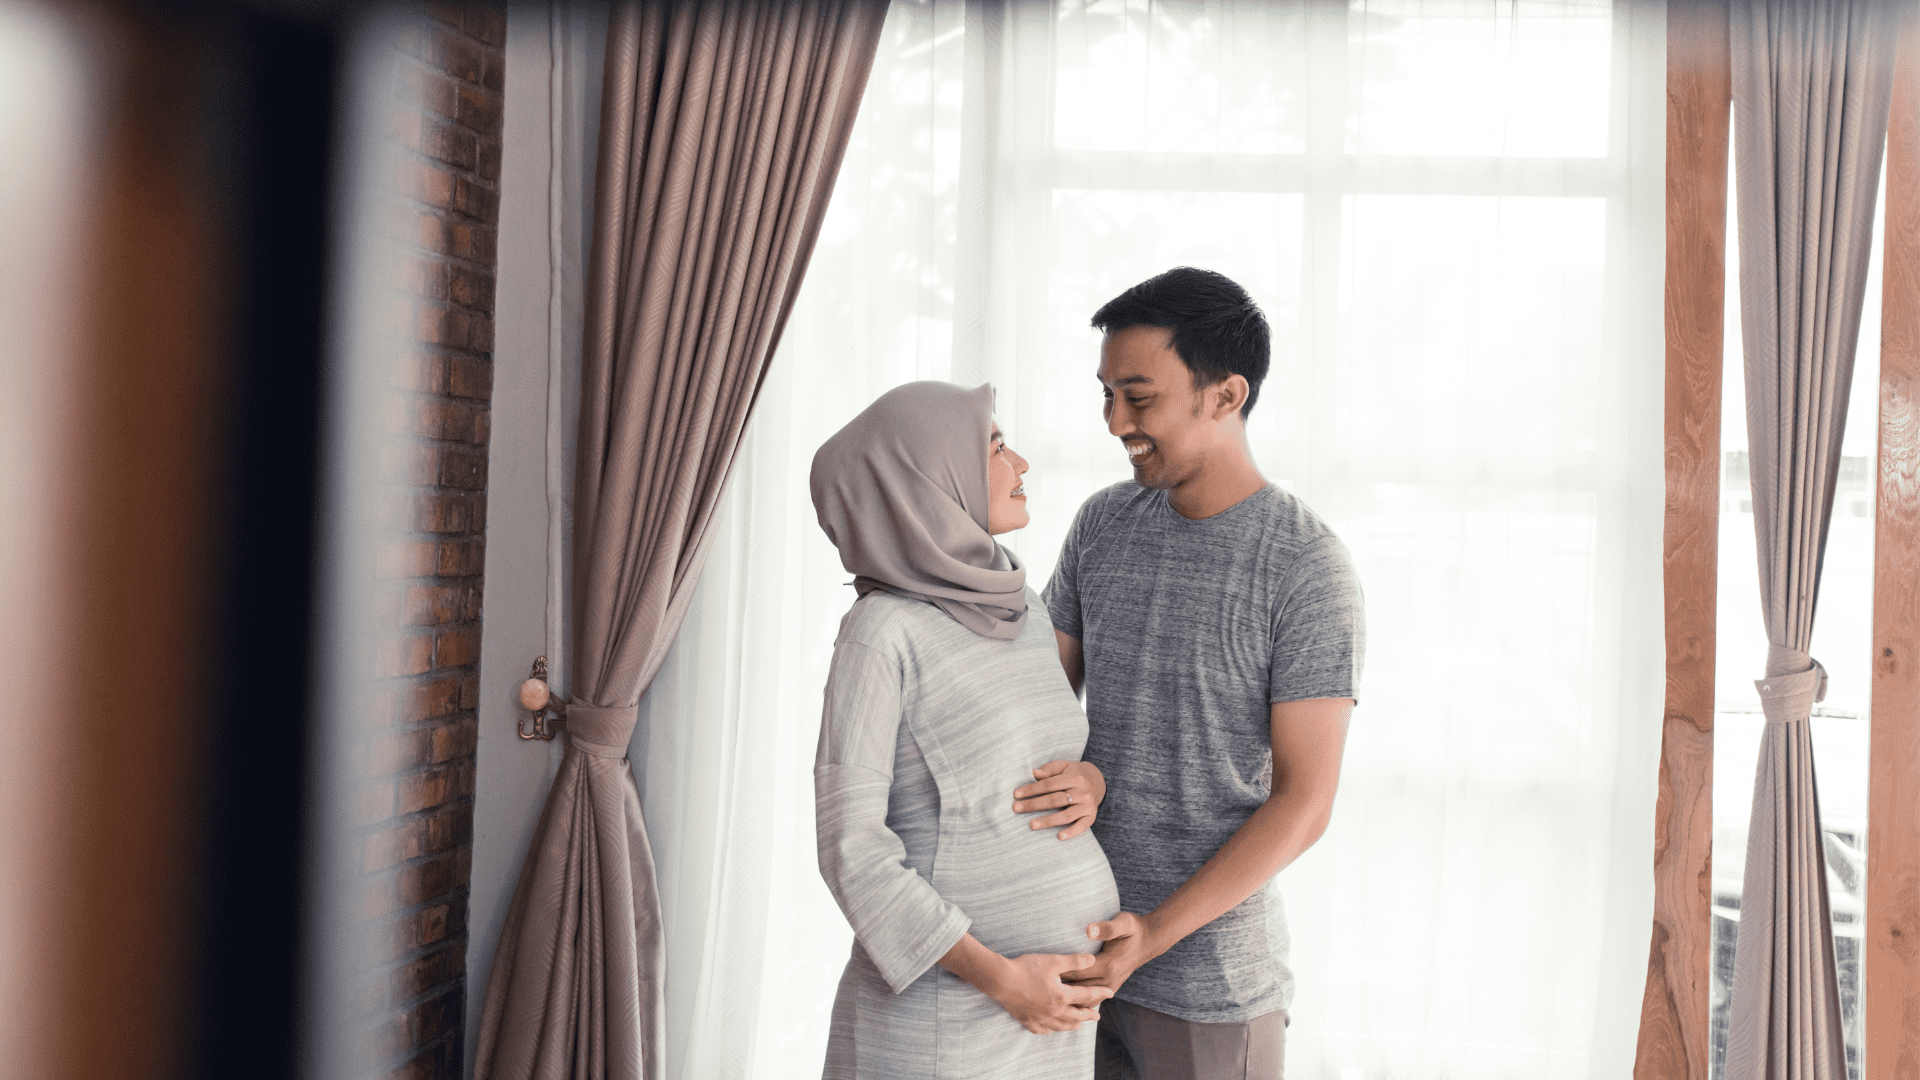 pregnant bride maternity wedding wedding malaysia pregnant wedding wedding planning wedding tips